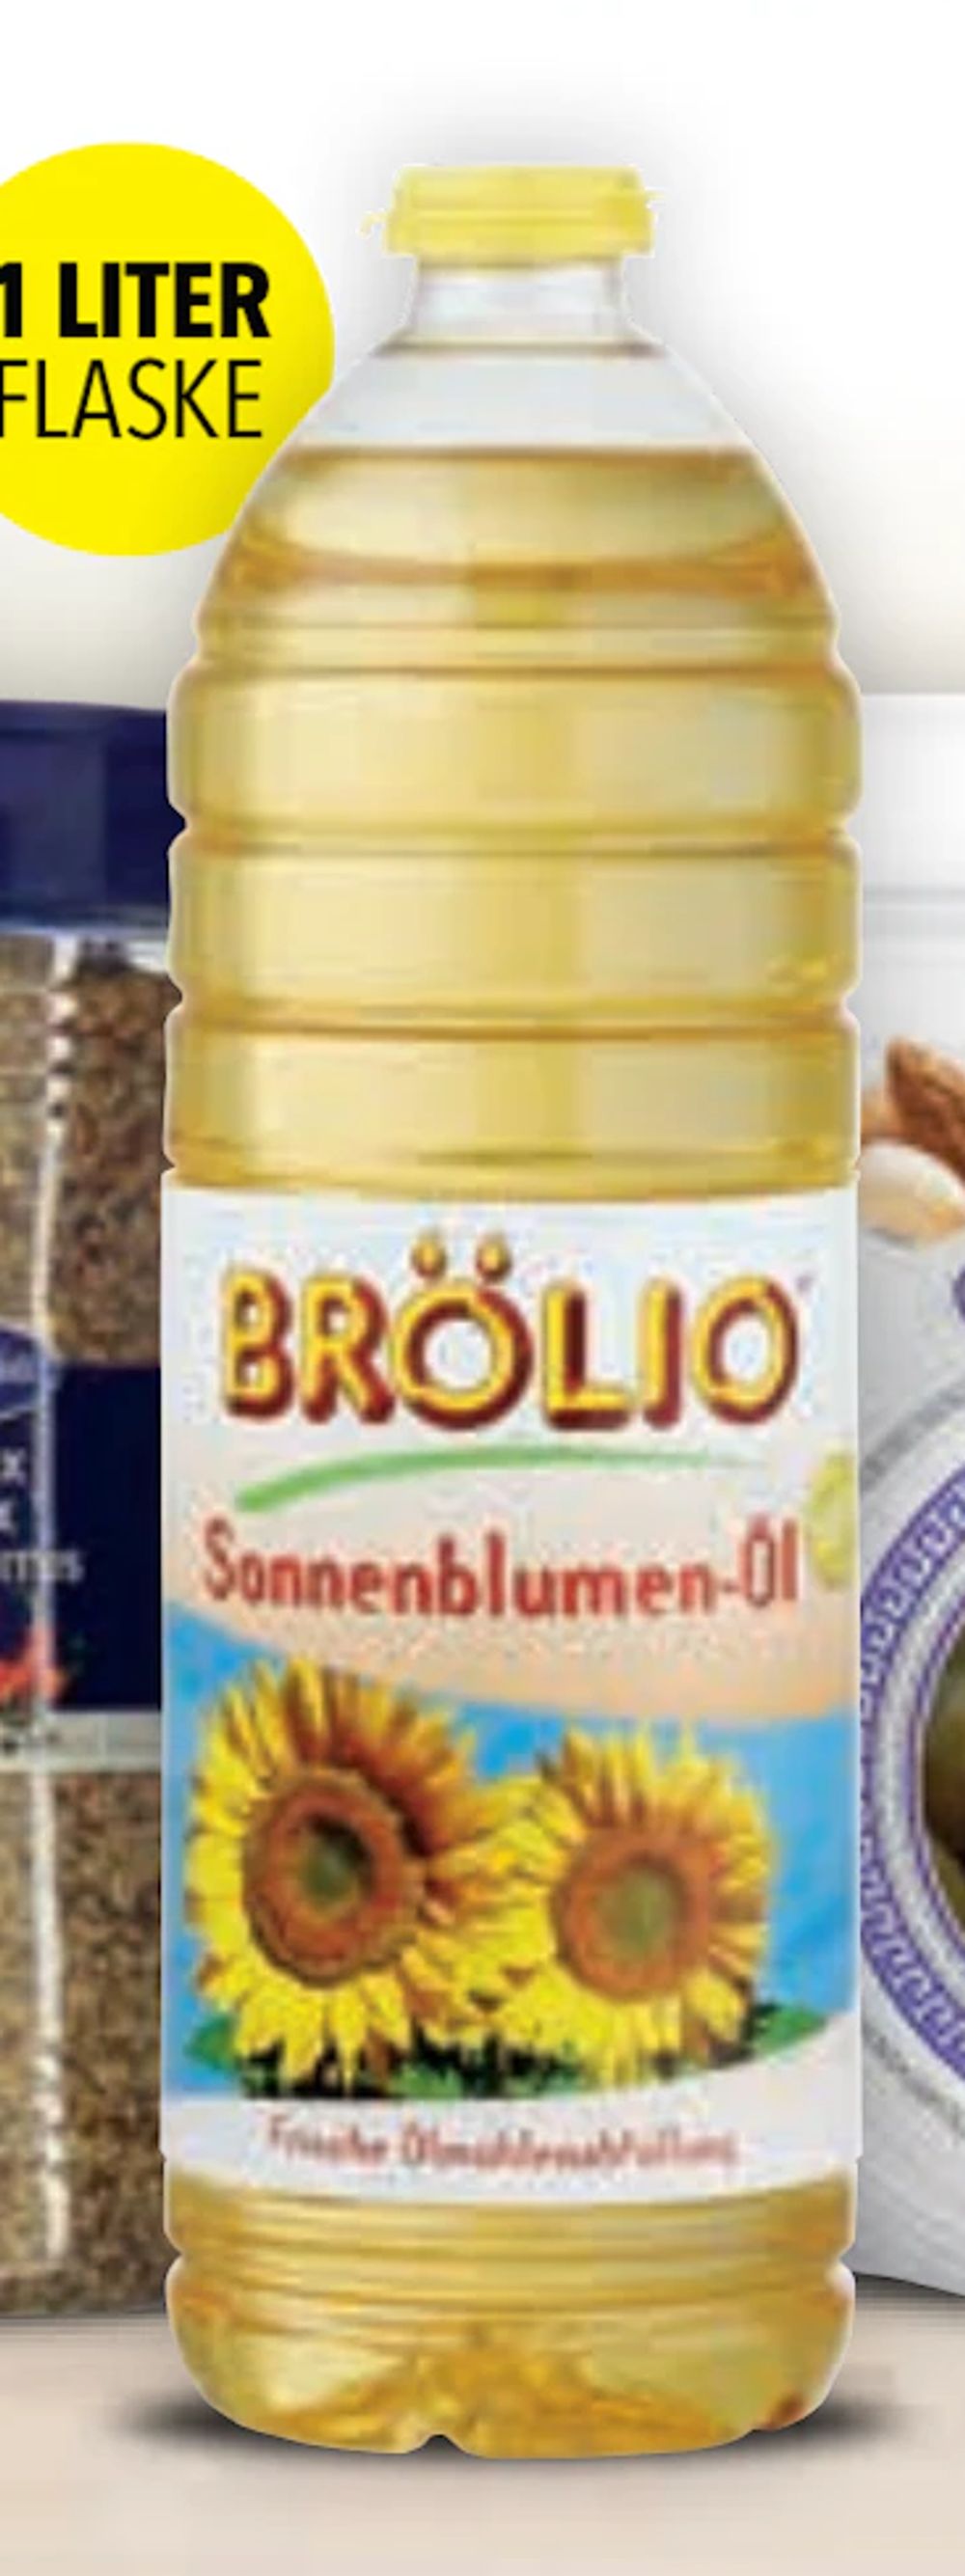 Tilbud på Brölio Solsikkeolie fra CITTI til 22,99 kr.